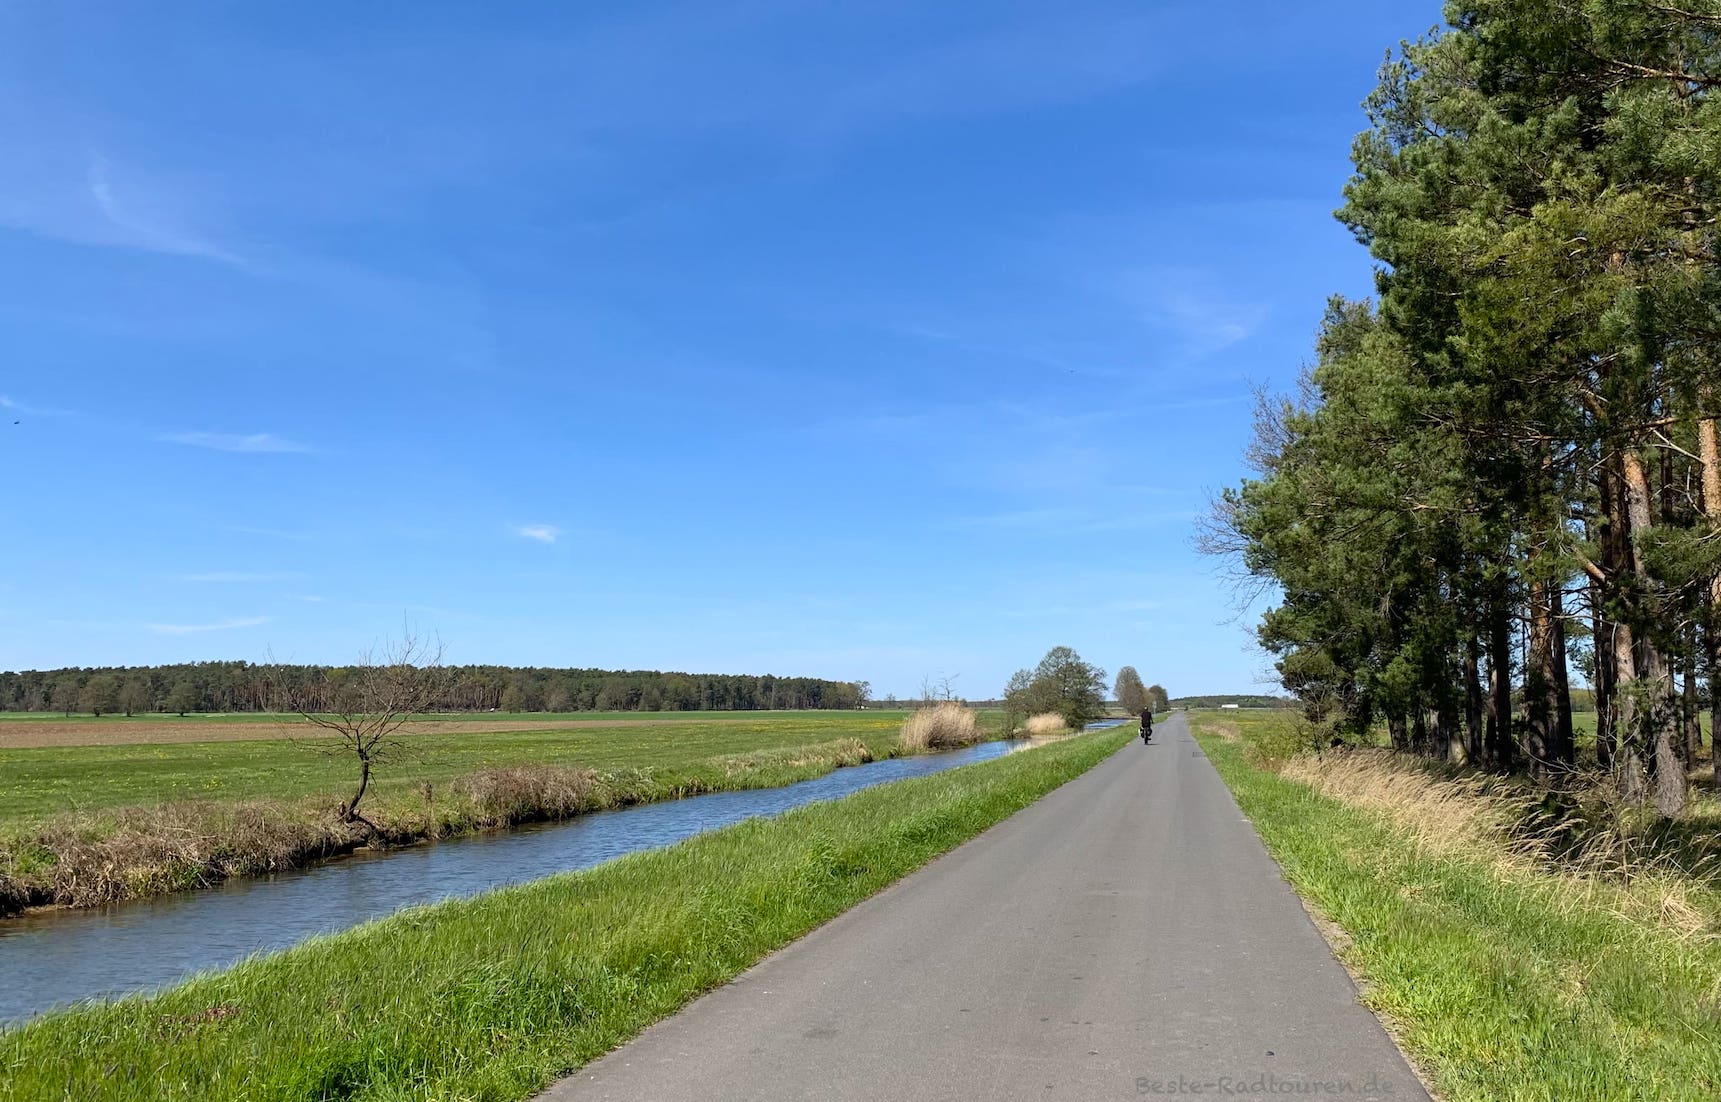 Foto vom Tour-Brandenburg-Radweg aus: Radwanderweg am Fluss Kremitz bei Bernsdorf, Elbe-Elster